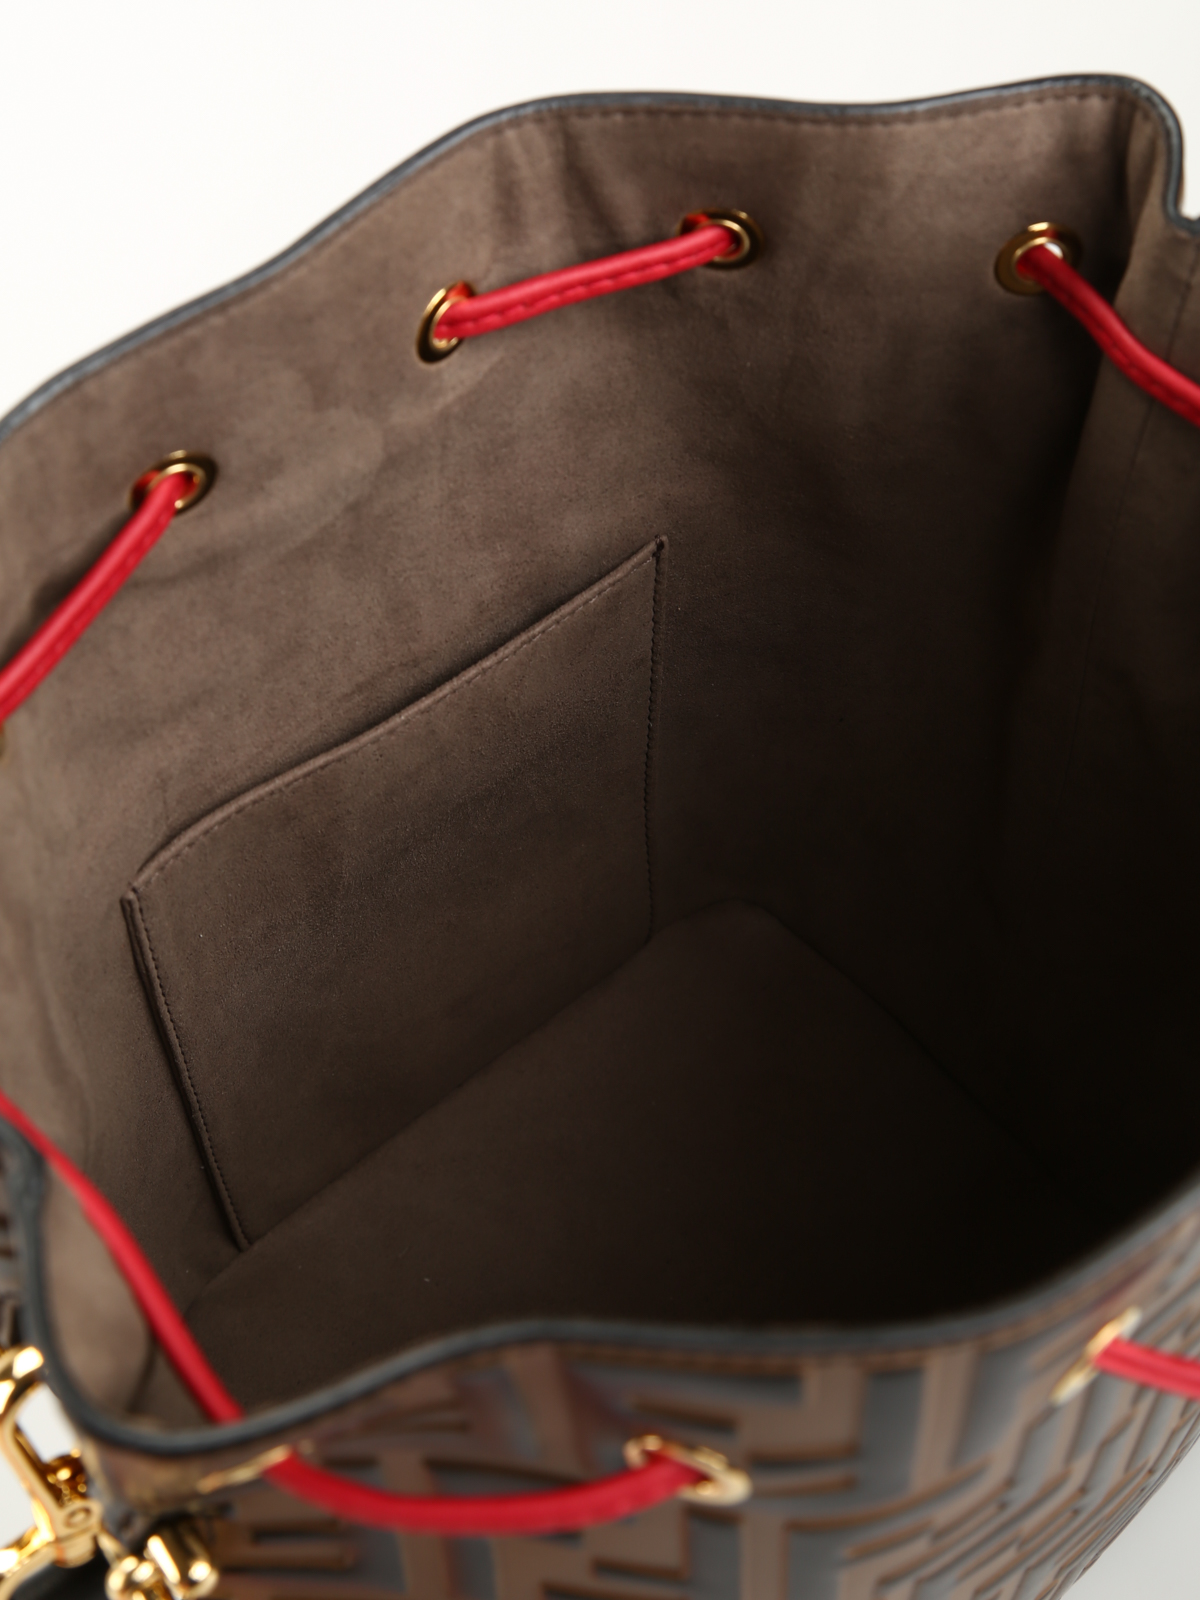 Relatie Op maat parallel Bucket bags Fendi - Mon Tresor leather large bucket bag - 8BT298A6AEF13VJ